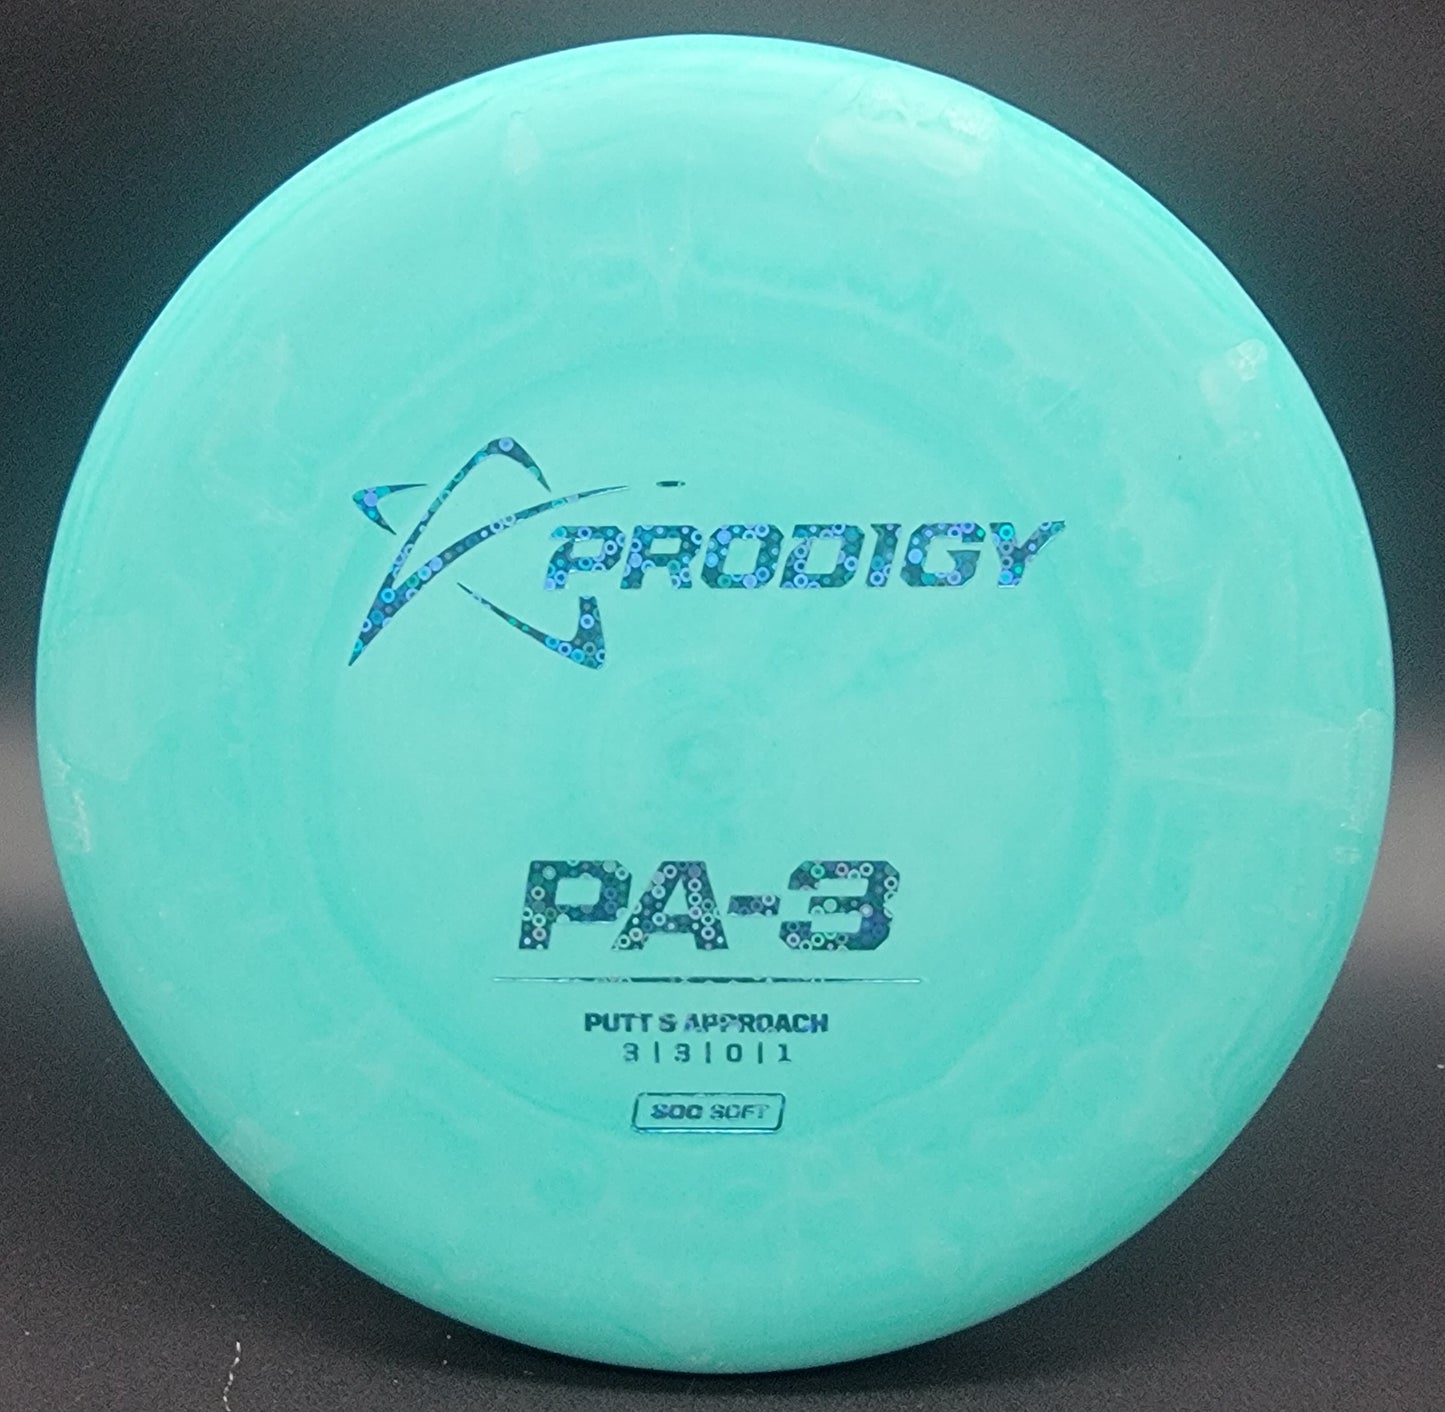 Prodigy PA-3 300G Soft